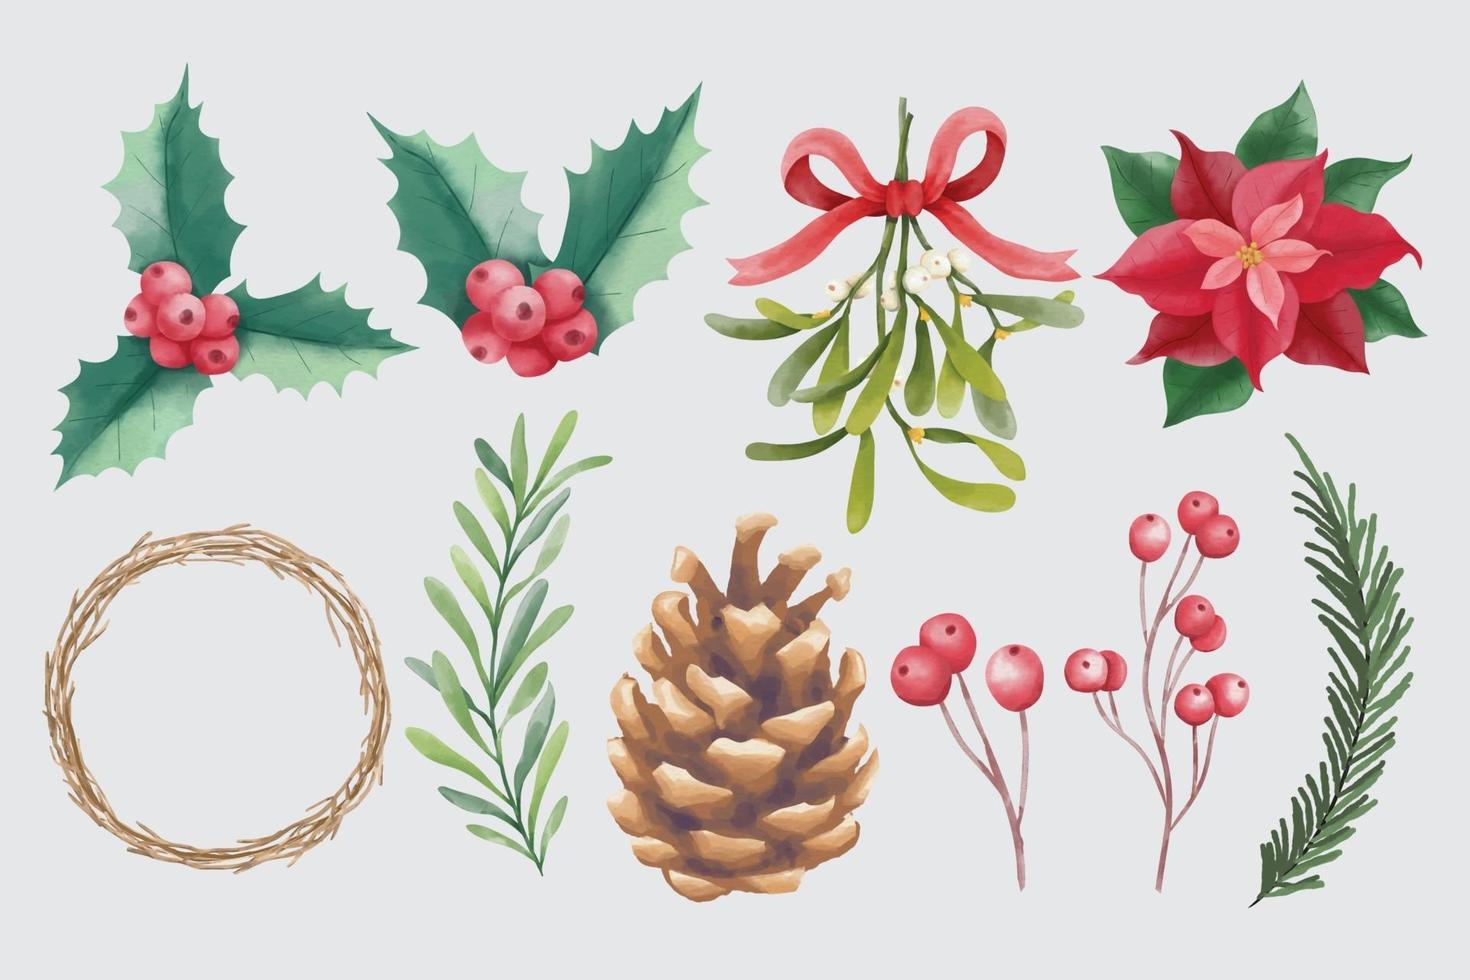 acuarela elementos florales navideños e invernales vector